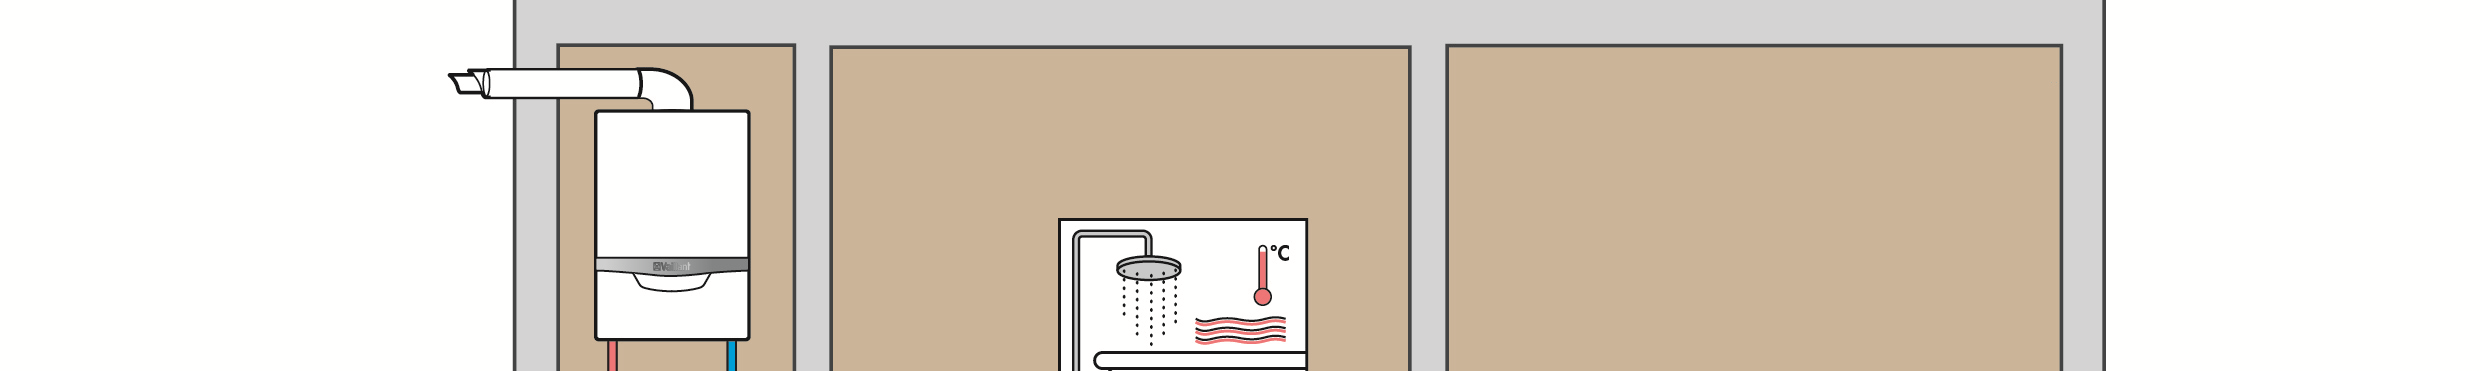 temperatuur systeem